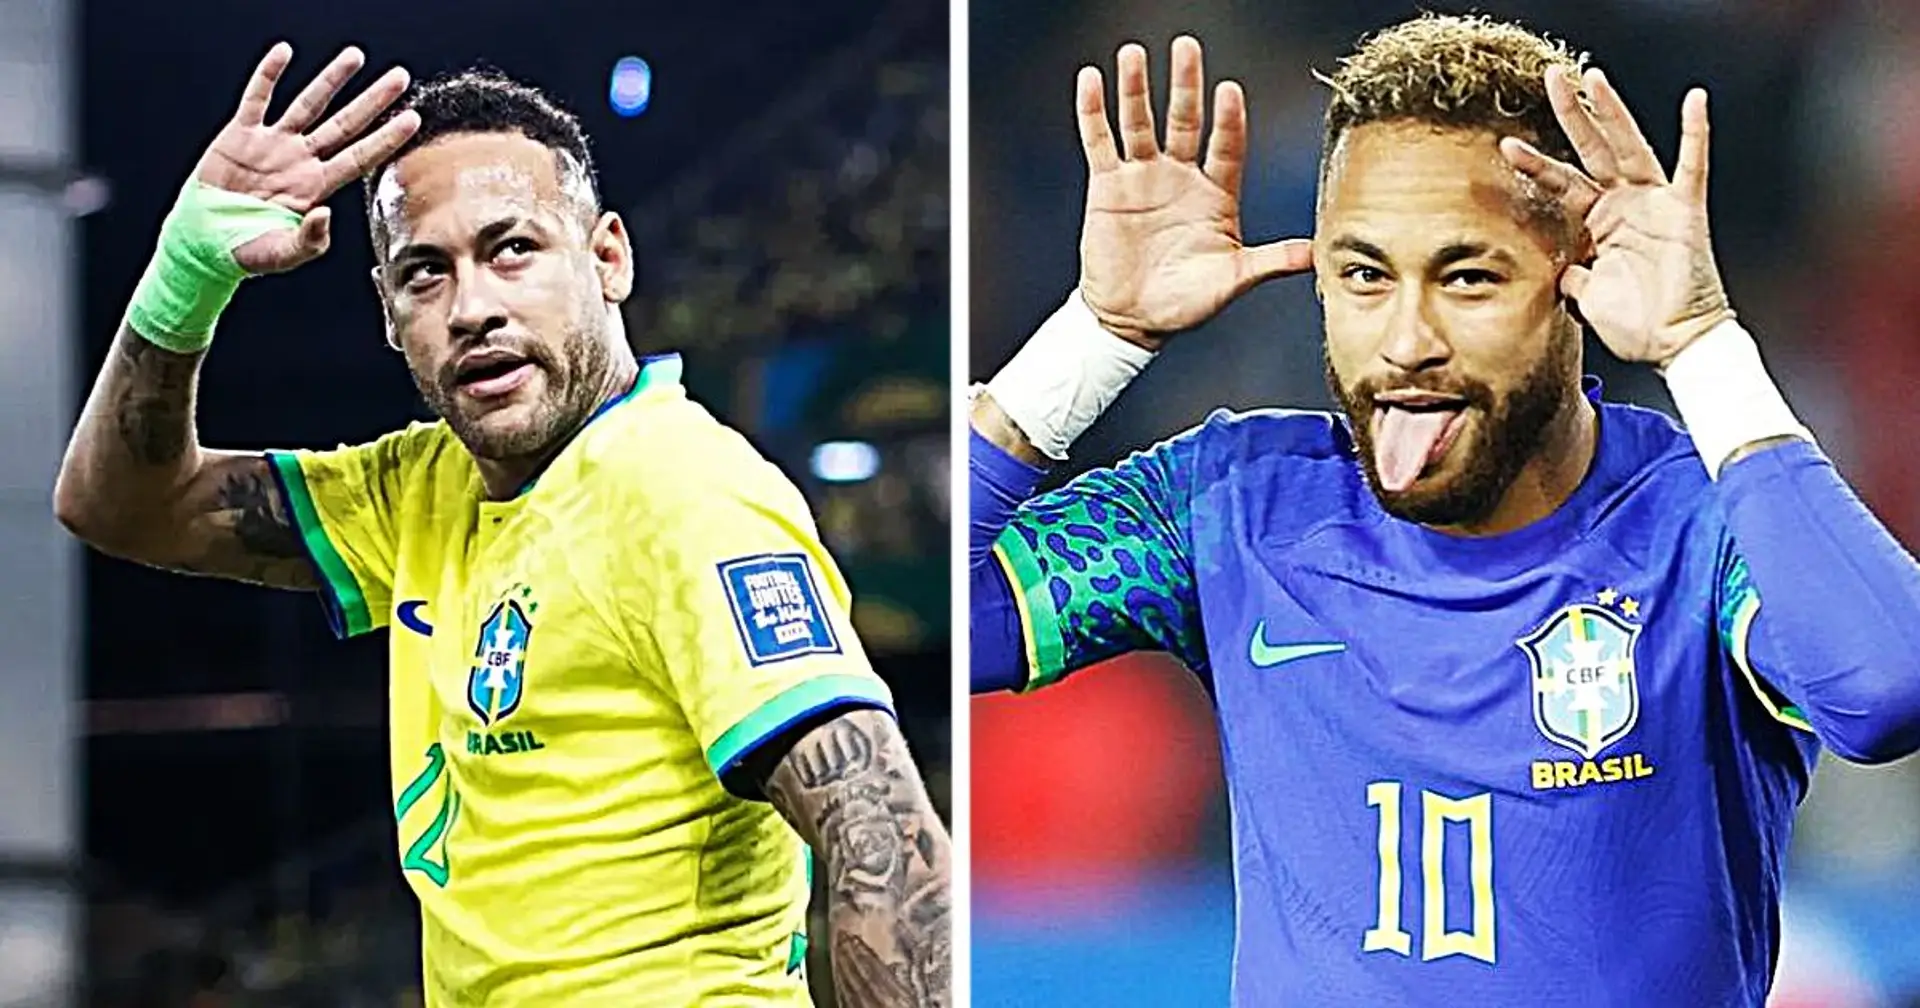 Neymar organisiert dreitägige Kreuzfahrt mit Tickets von 1 bis 6 Tausend Euro - Fußballer spielt wegen Knieverletzung nicht